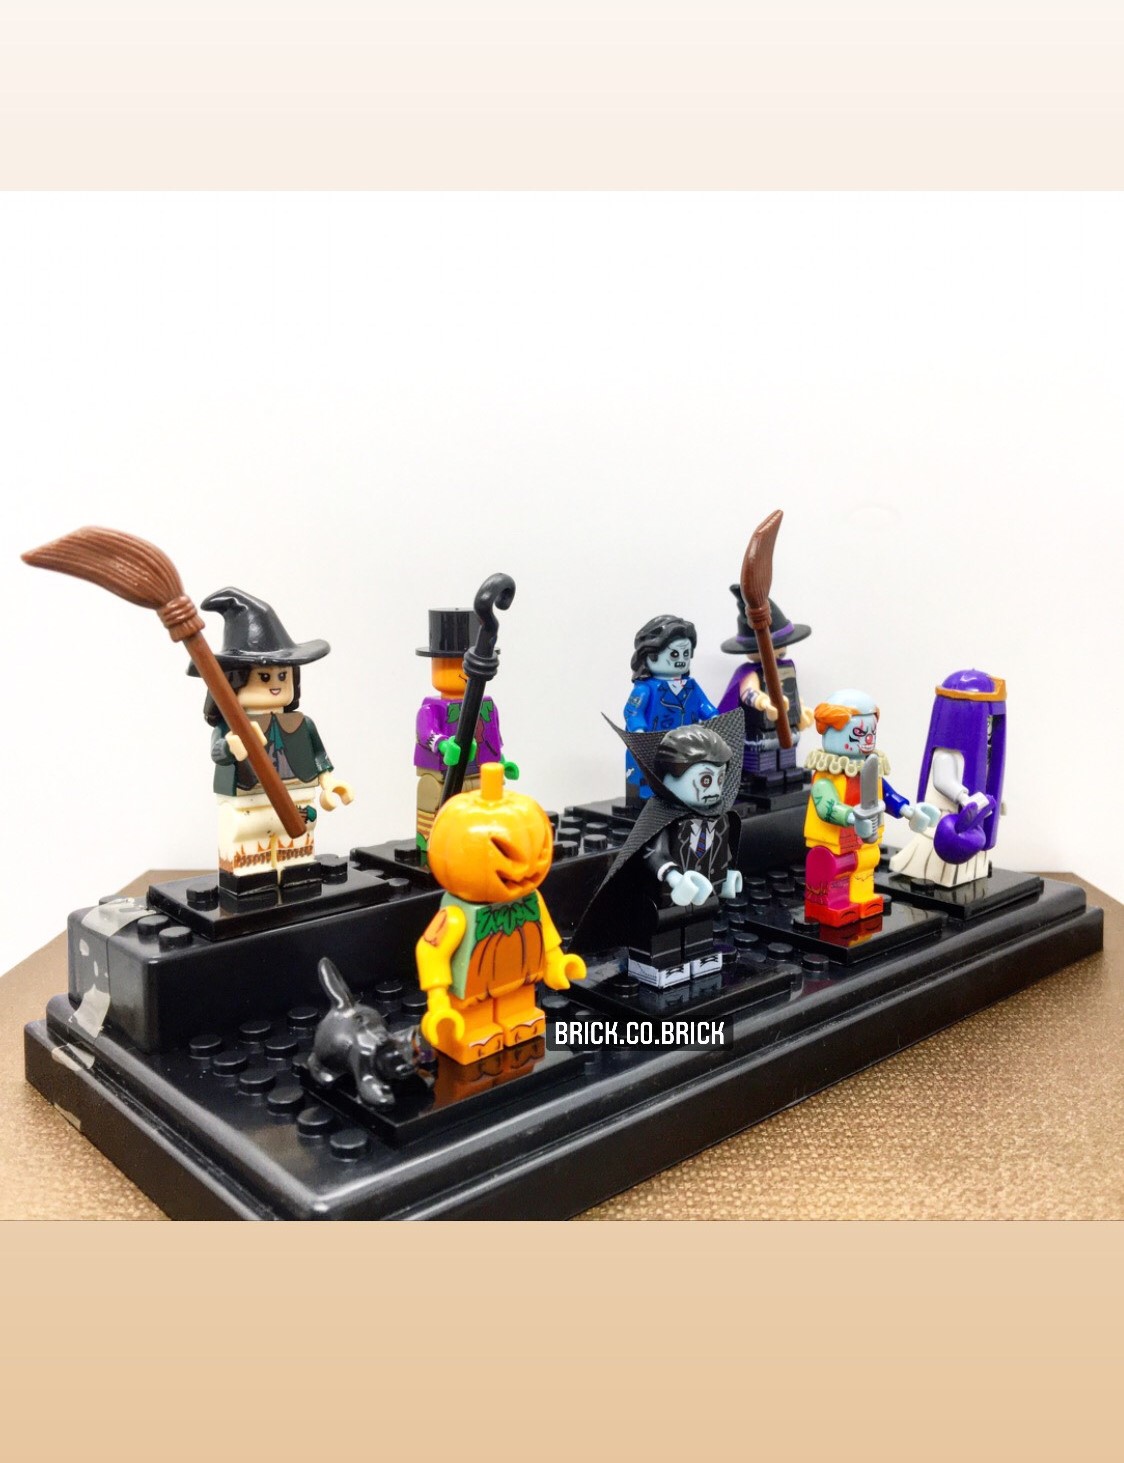 Đồ Chơi Lắp Ráp Kiểu LEGO PUBG Mô Hình M4A1 Asiimov MOC Kevin183  CSGO  Free Fire CoD Mixi  Shopee Việt Nam